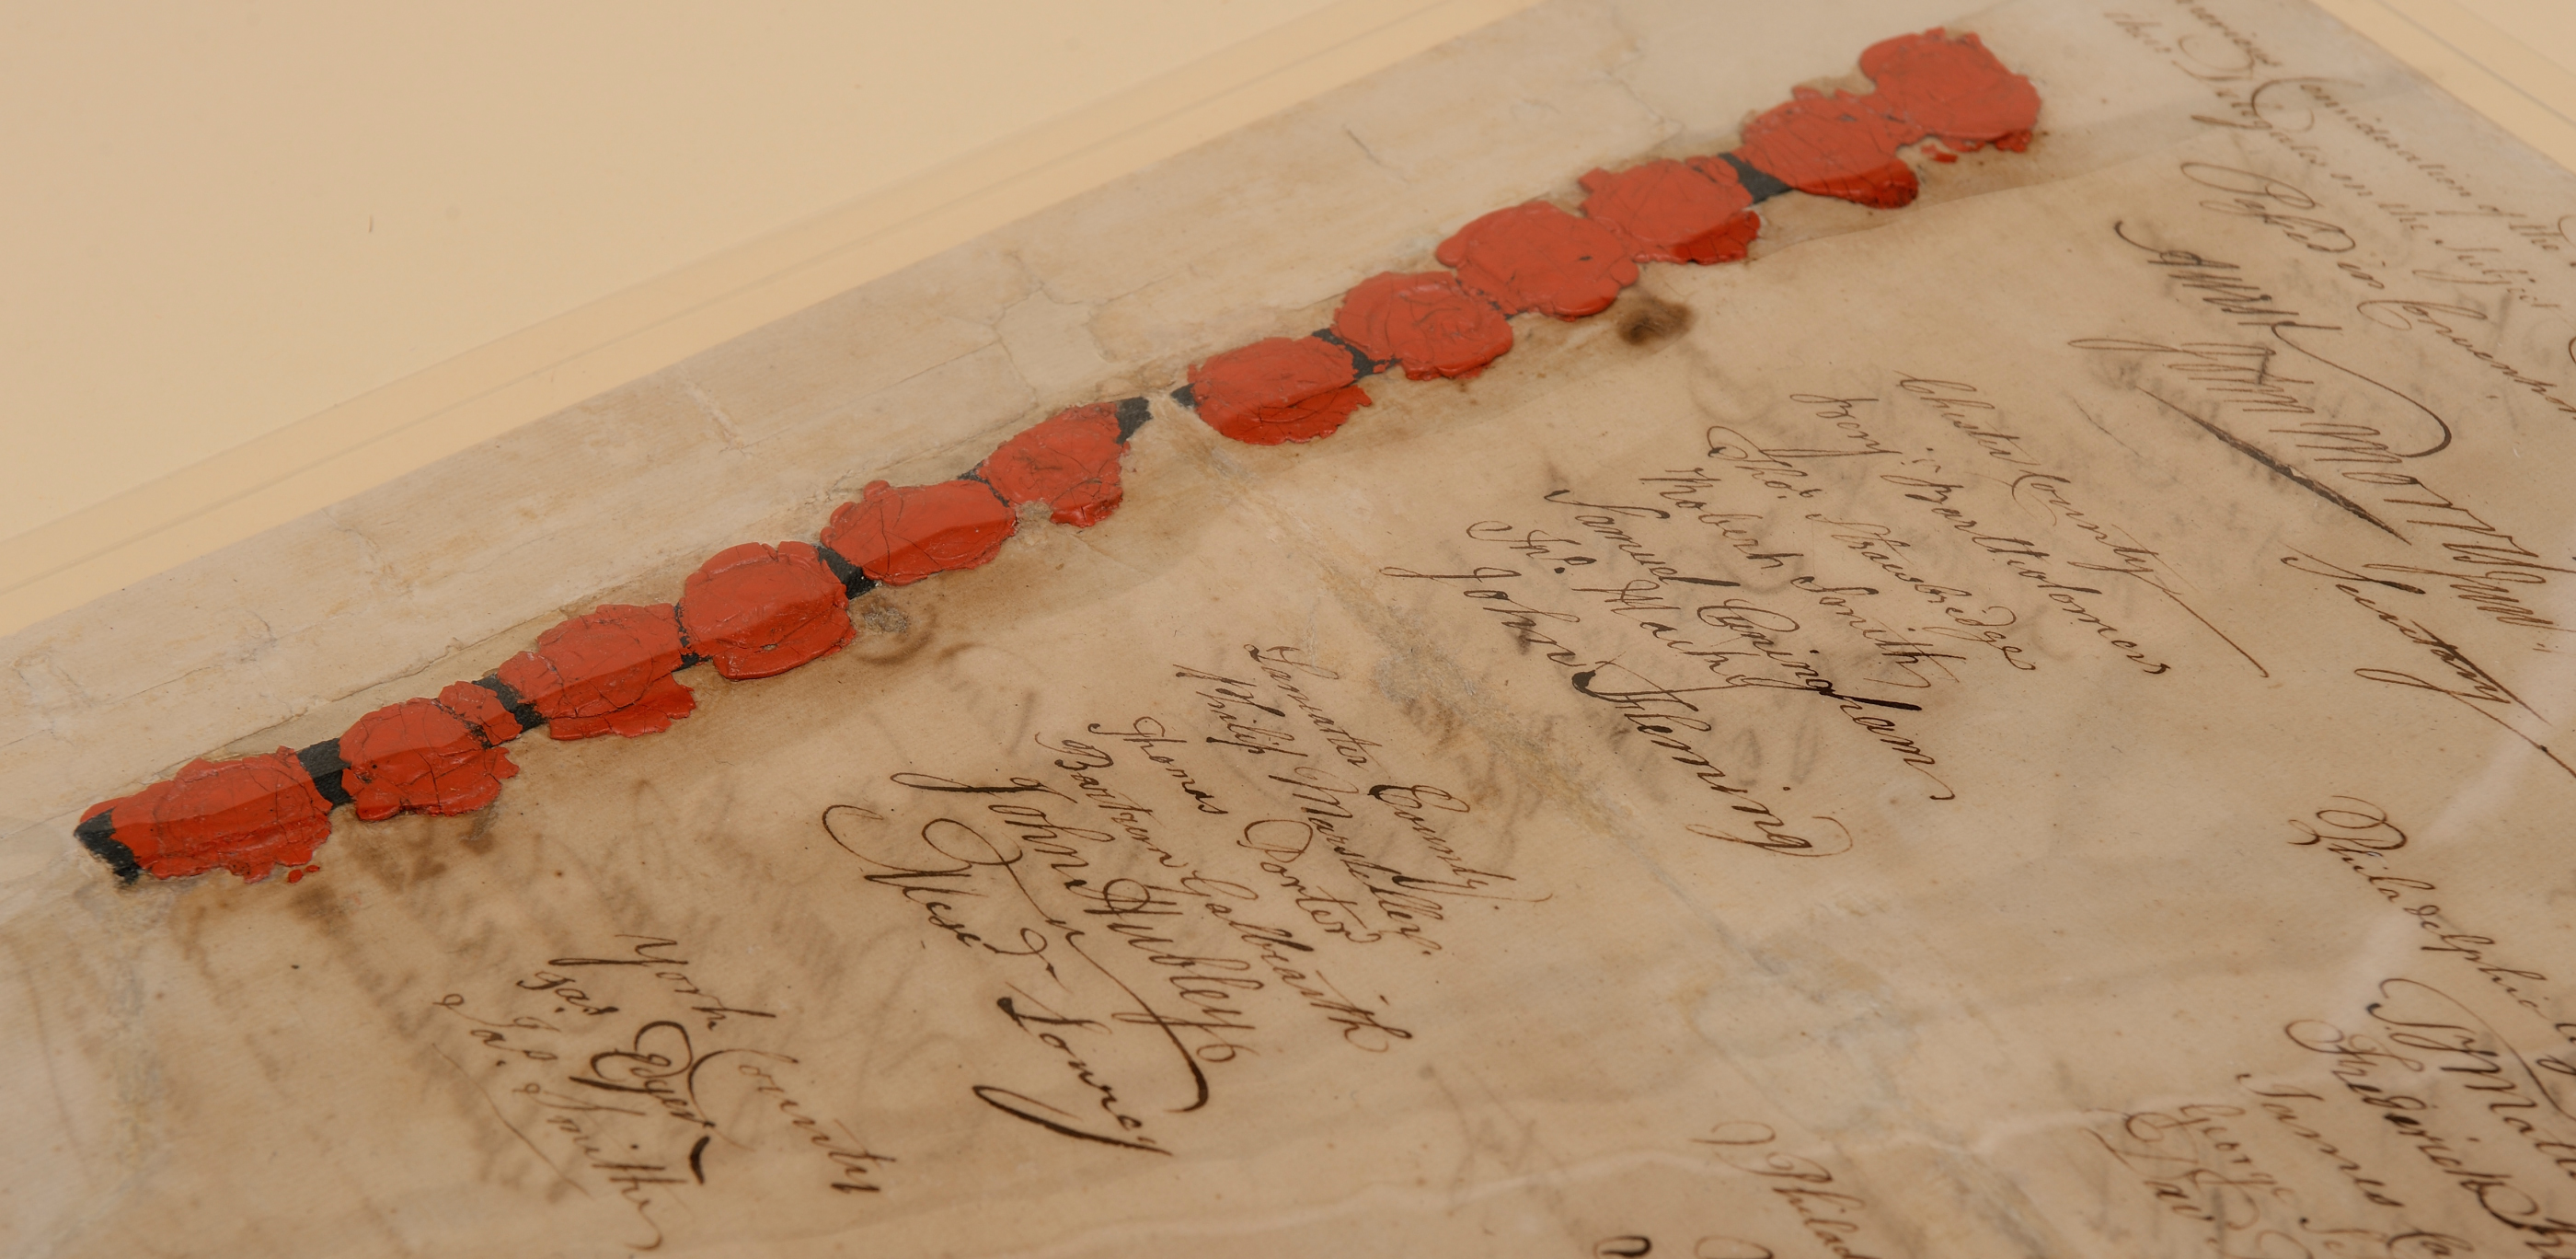 1776 Constitution of Pennsylvania